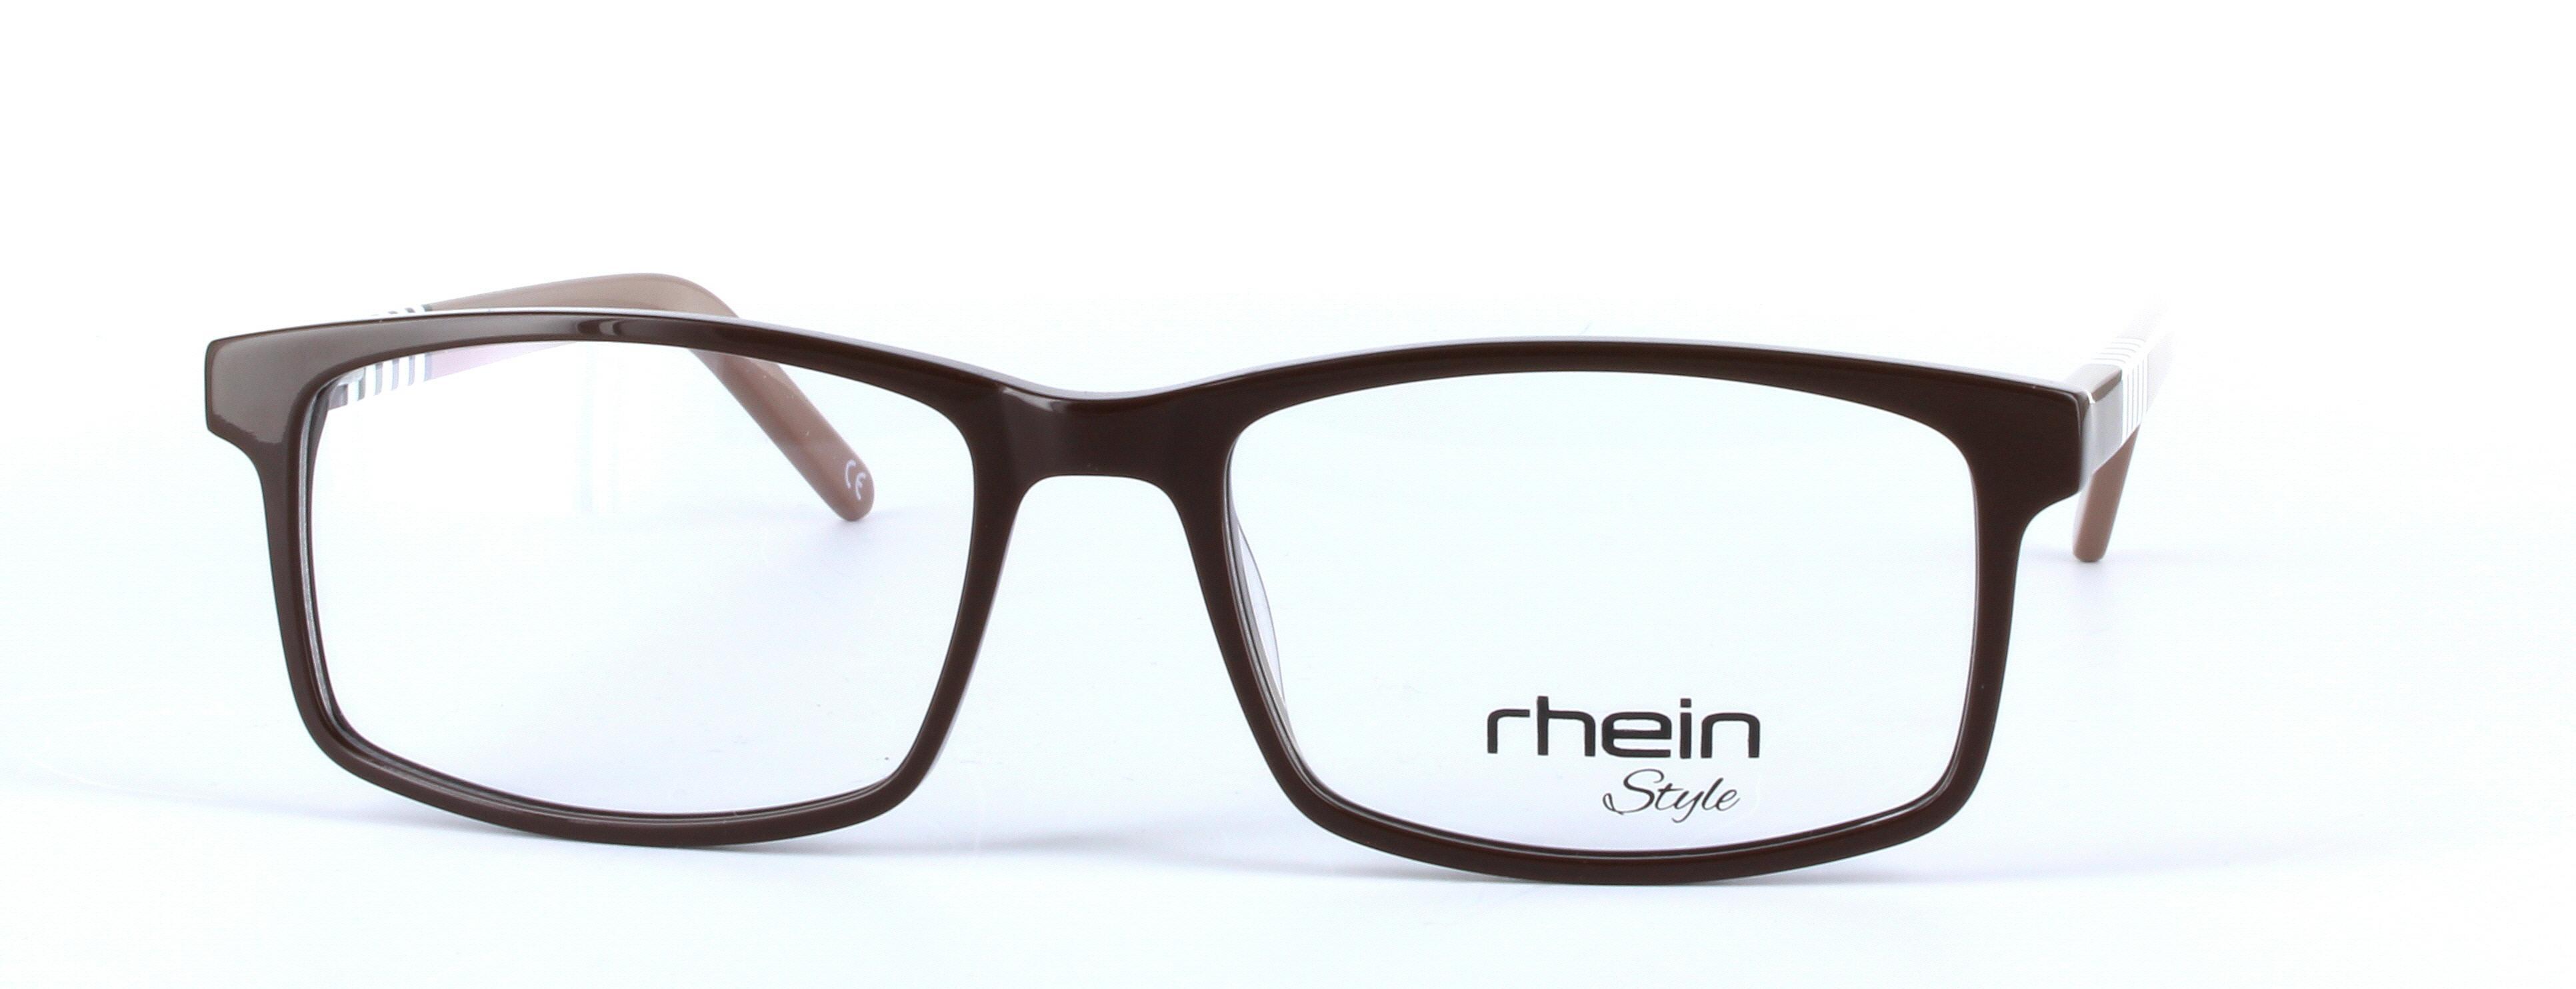 Binka Brown Full Rim Rectangular Plastic Glasses - Image View 5